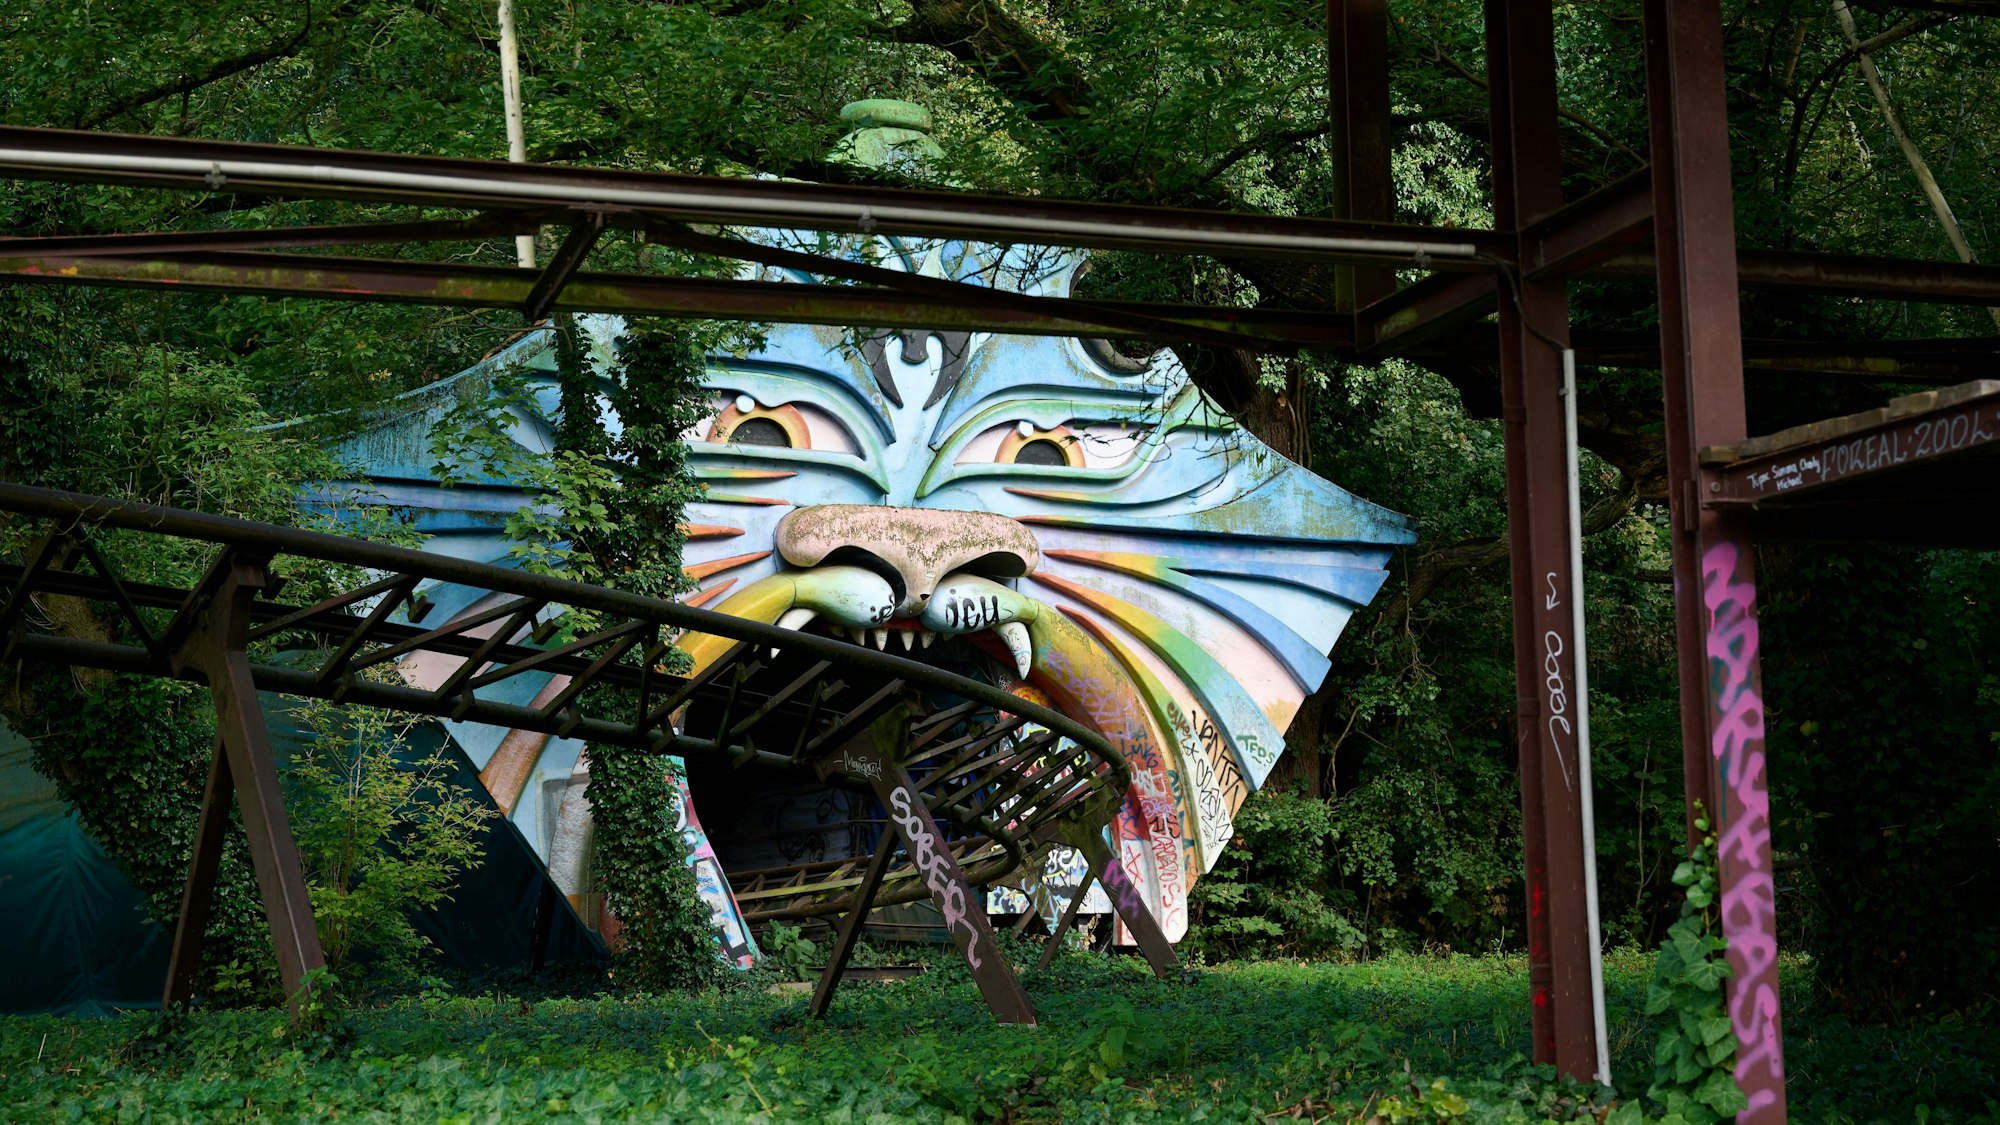 Ein verlassener Freizeitpark in Deutschland ist der Spreepark Berlin.